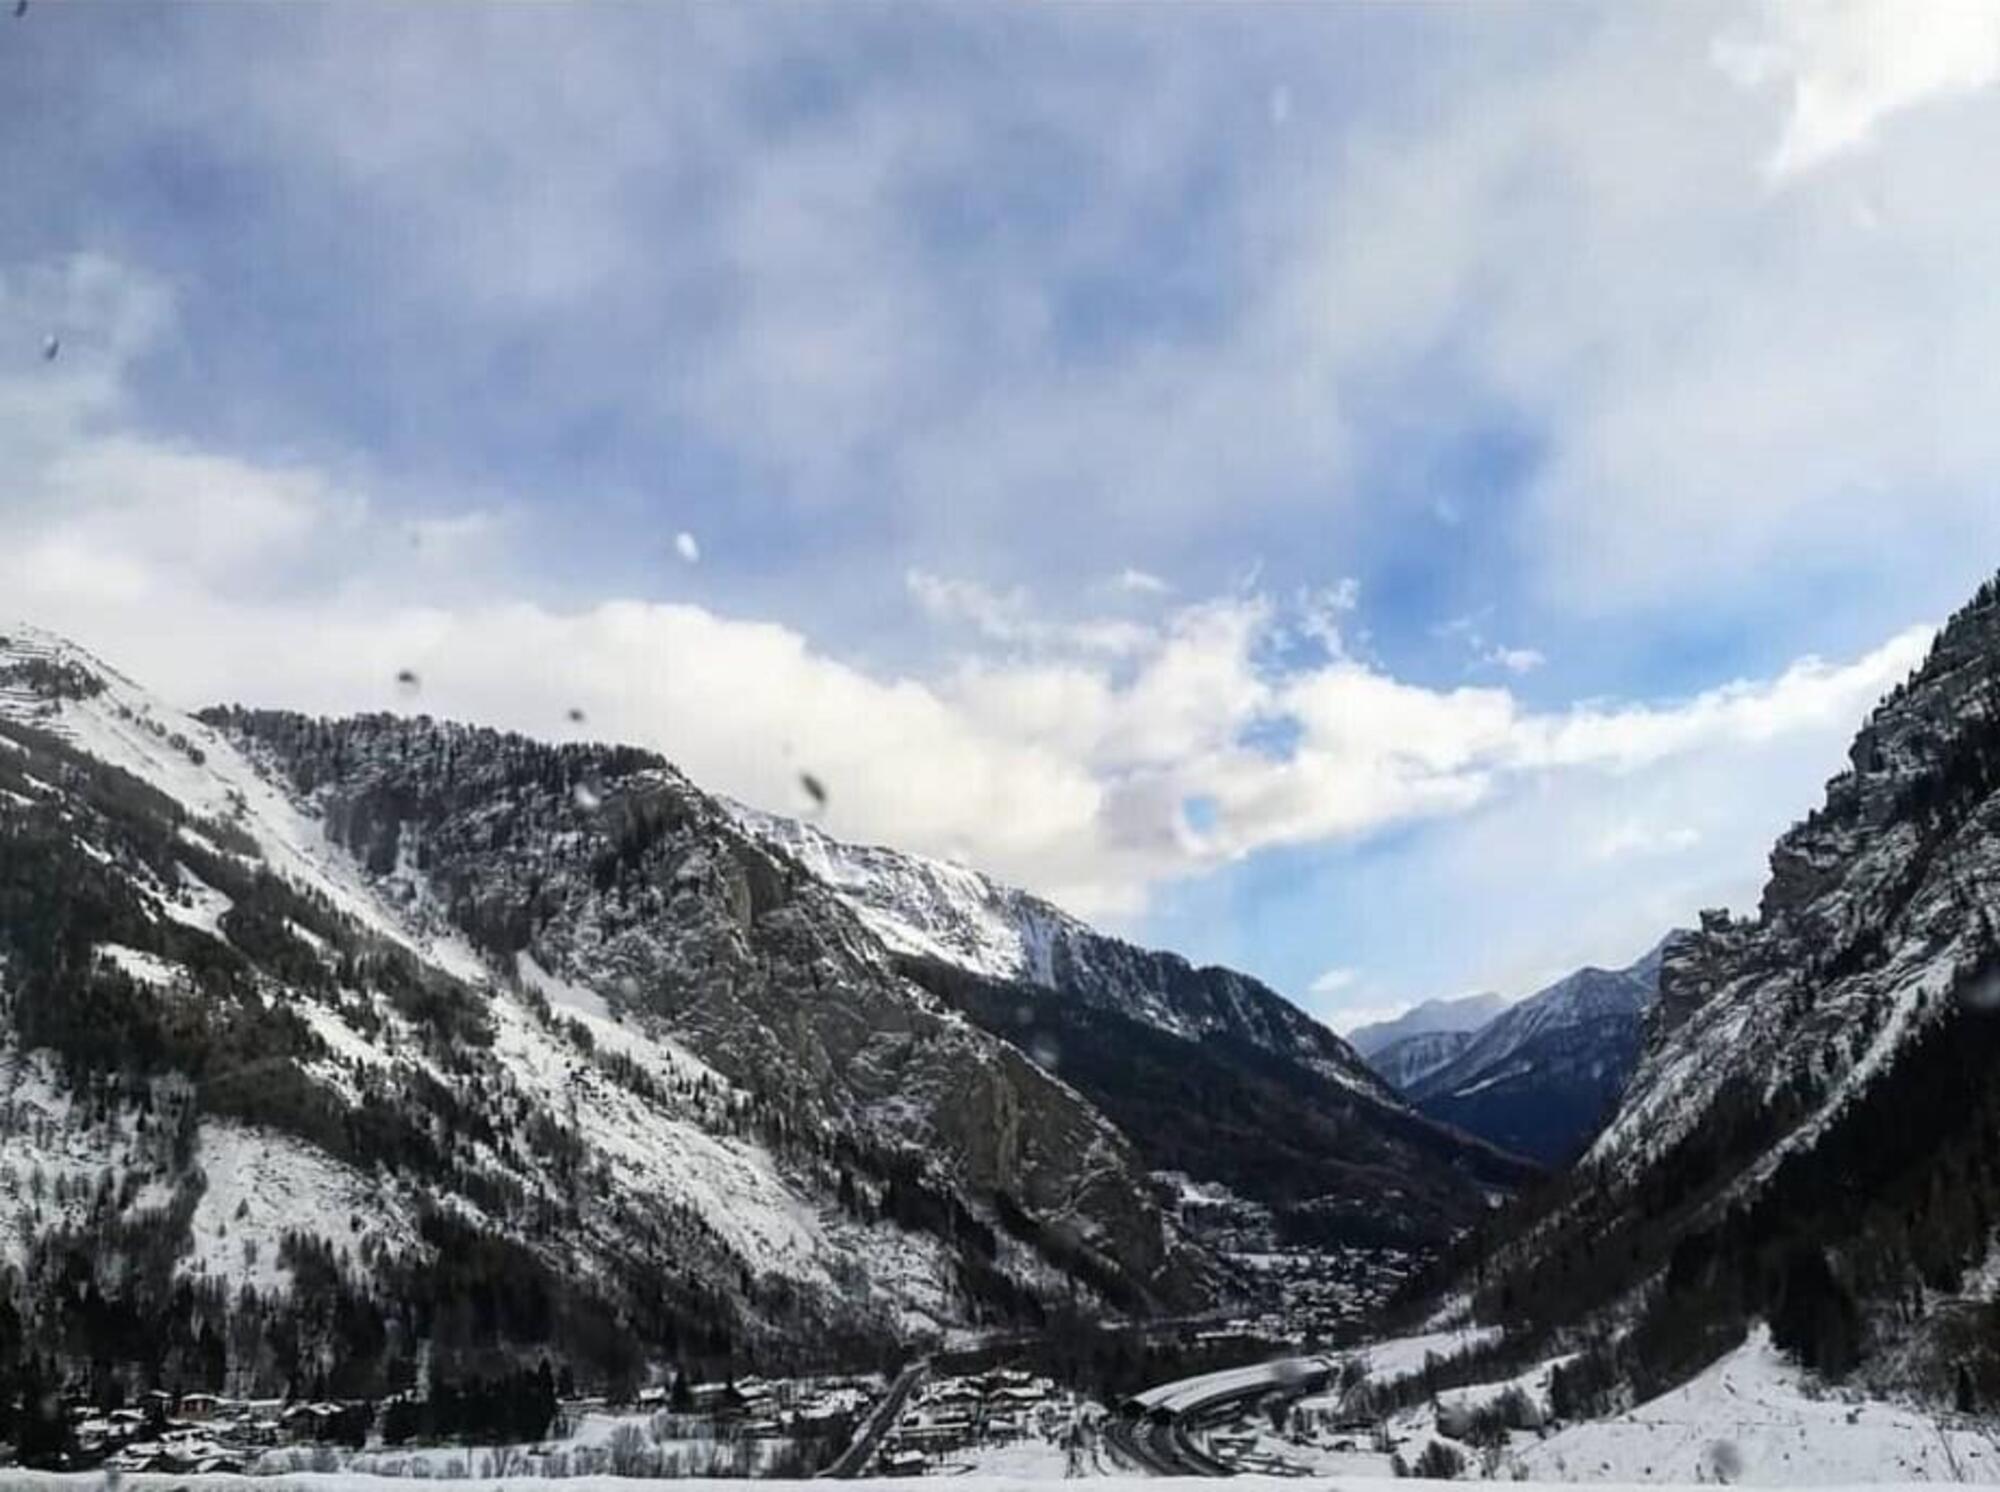 Il Monte Bianco in Francia, il punto esatto in cui il pullman Flixbus si ferm&ograve; per un guasto, lungo una pericolosa curva dei tornanti